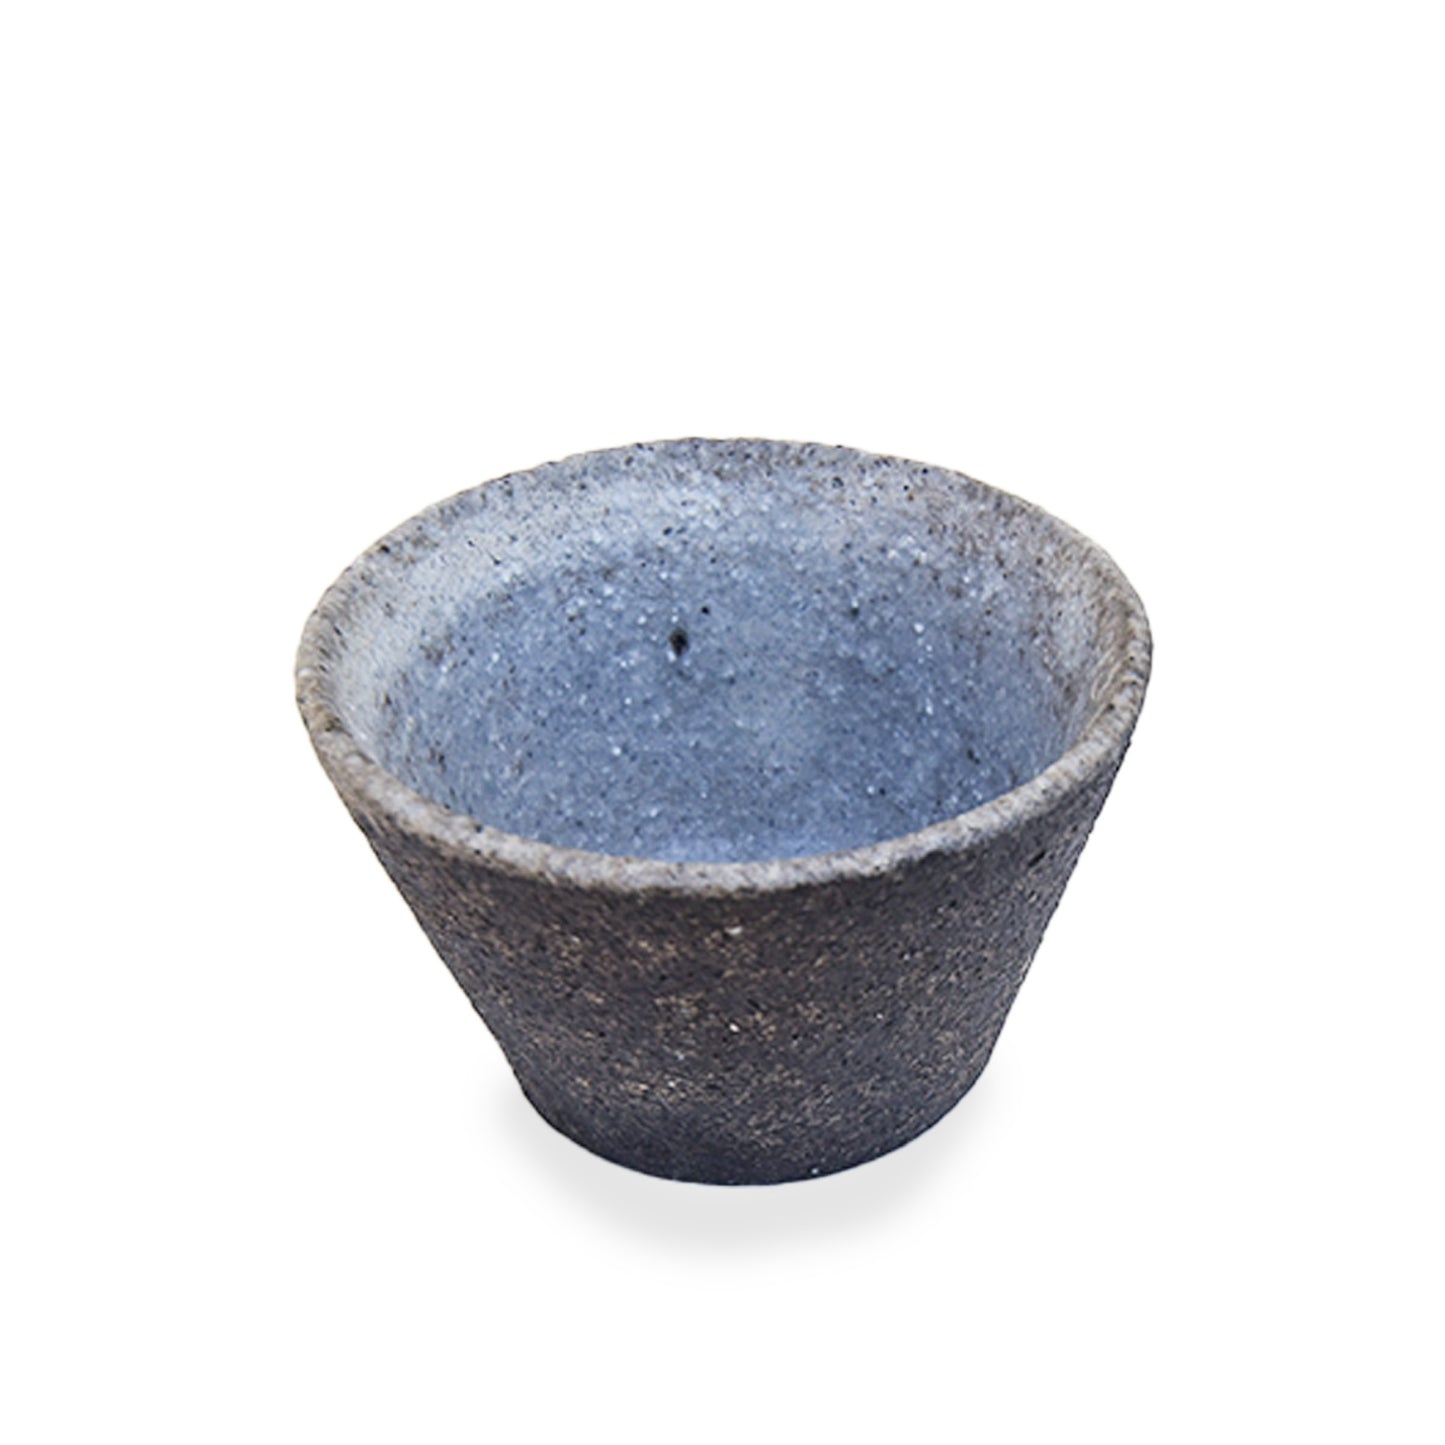 Morito Tatsuruhama 25 Sake Cup